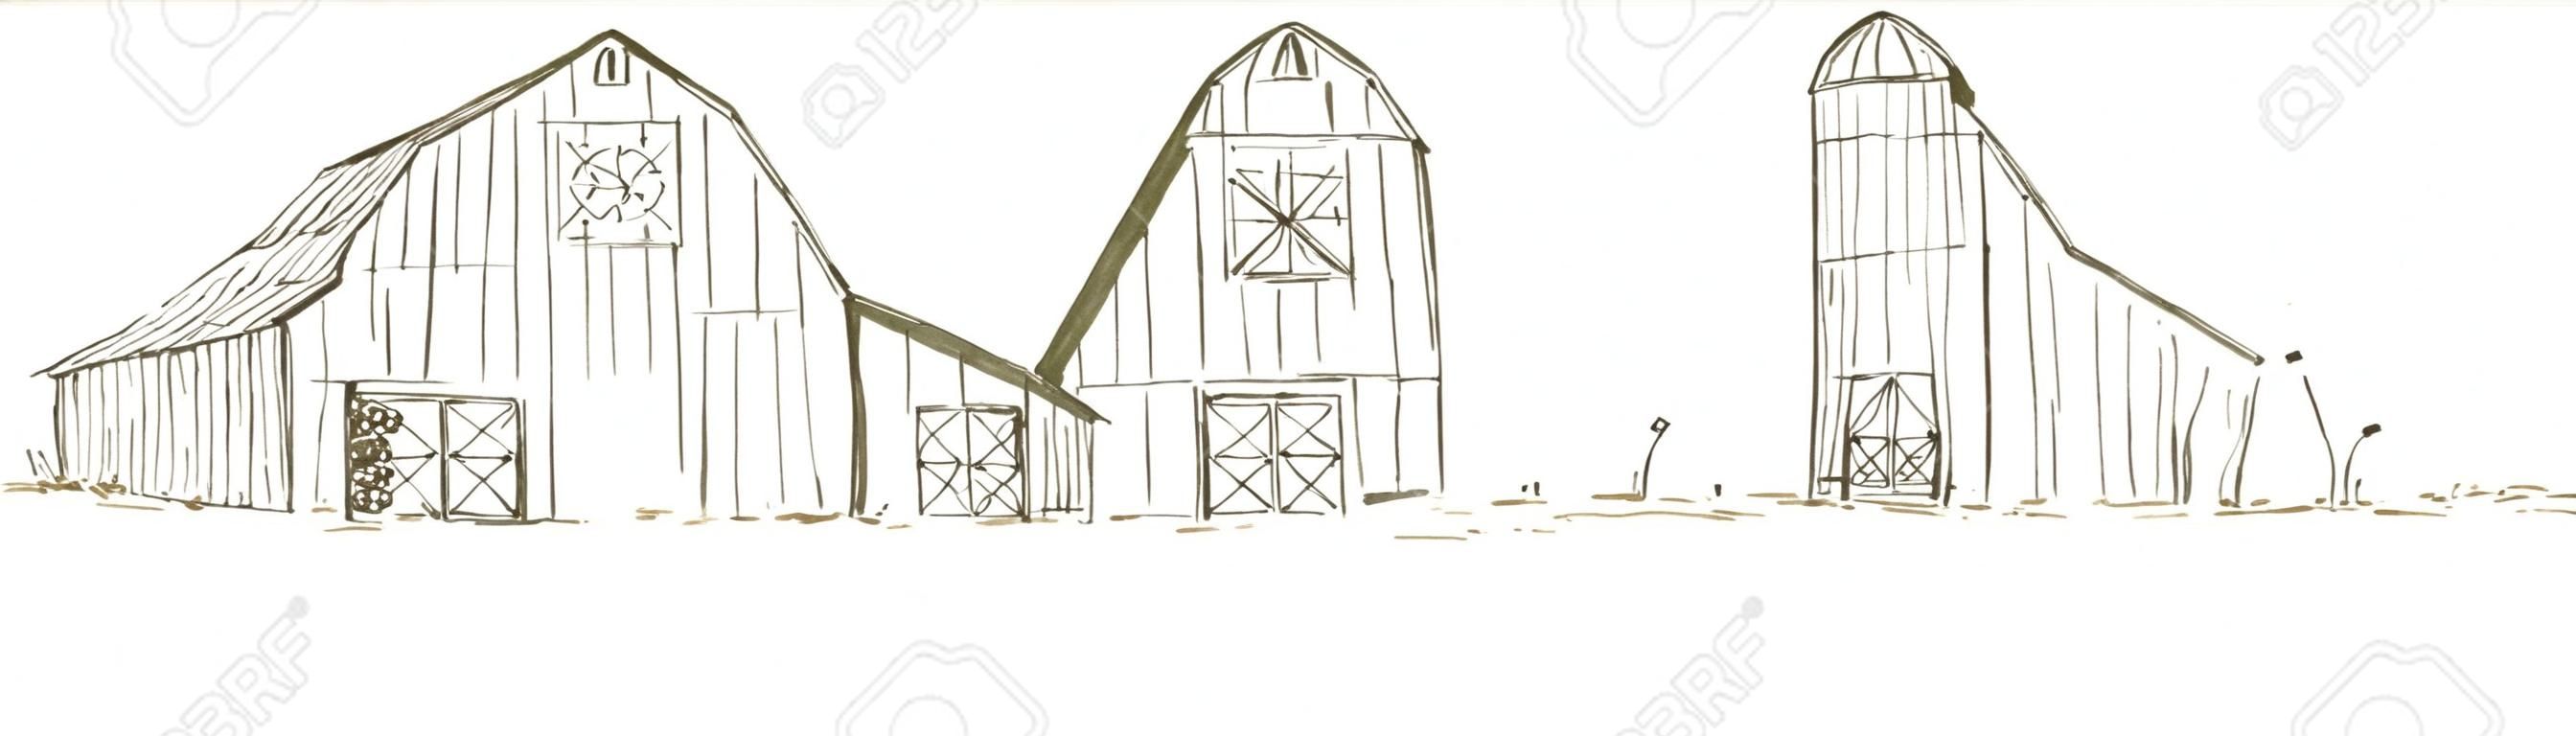 Pen en inkt stijl illustratie van een oude schuur / boerderij scene.